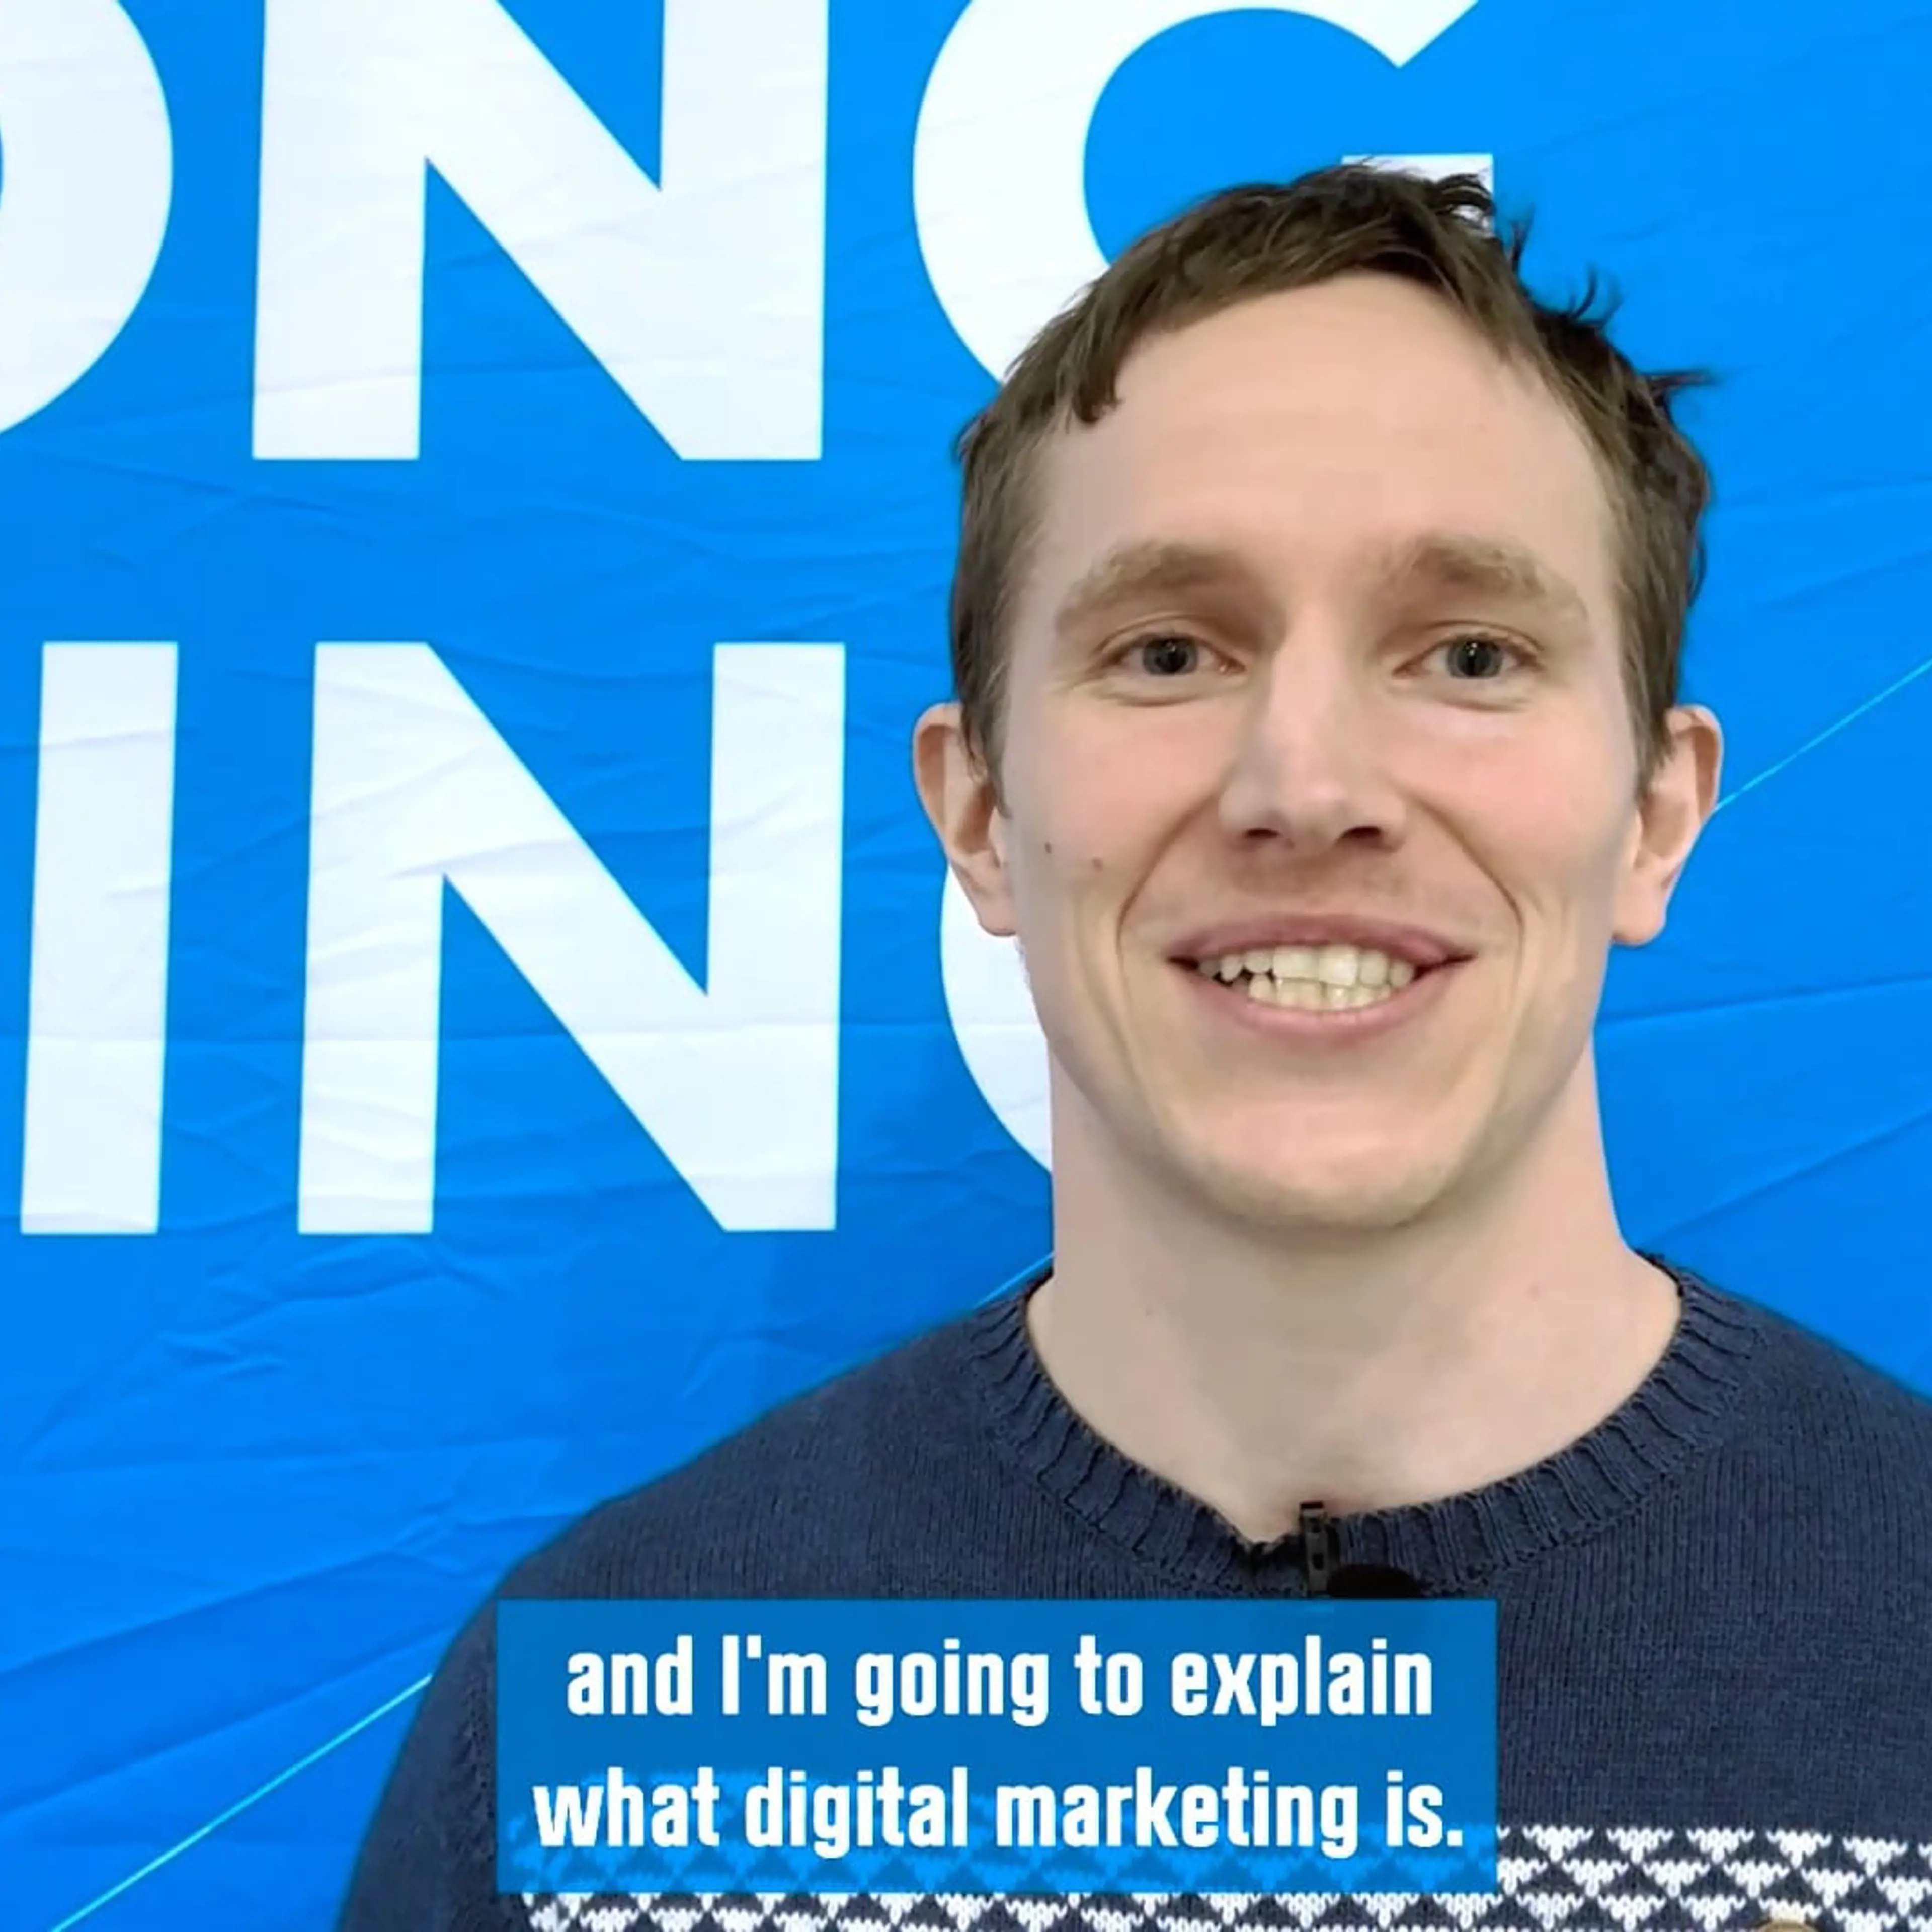 Speaker at event Digital Marketing Insights Dennis Nielsen explains what digital marketing is